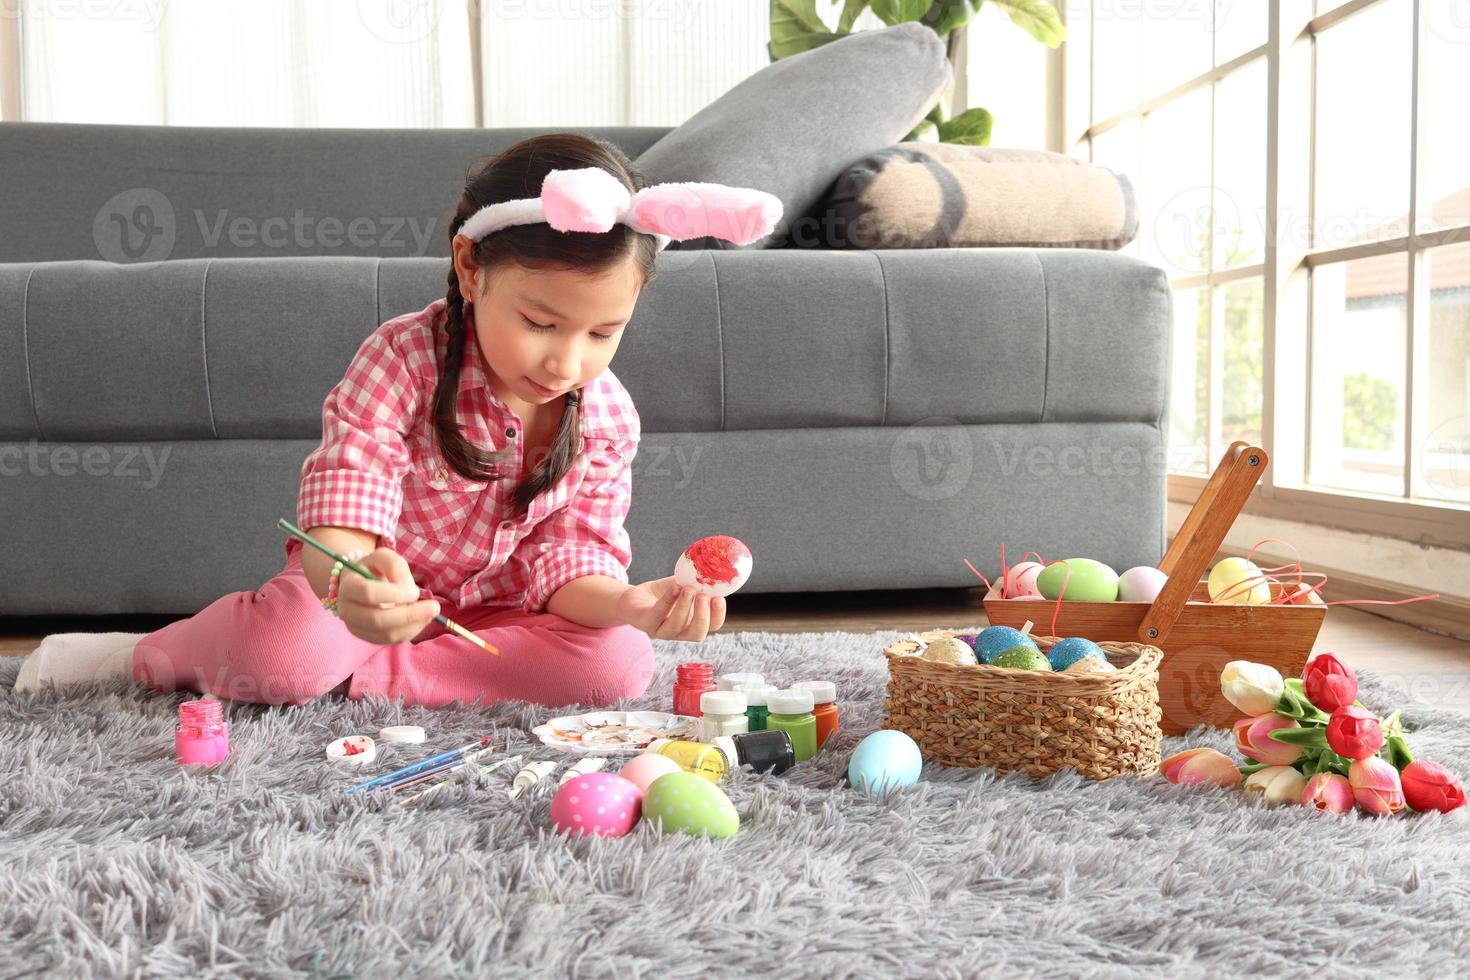 adorabile rosa coniglietta pasquale bambina con orecchie di coniglio fascia che dipinge uova di Pasqua colorate in soggiorno, decorazioni per celebrare l'inizio della primavera. foto